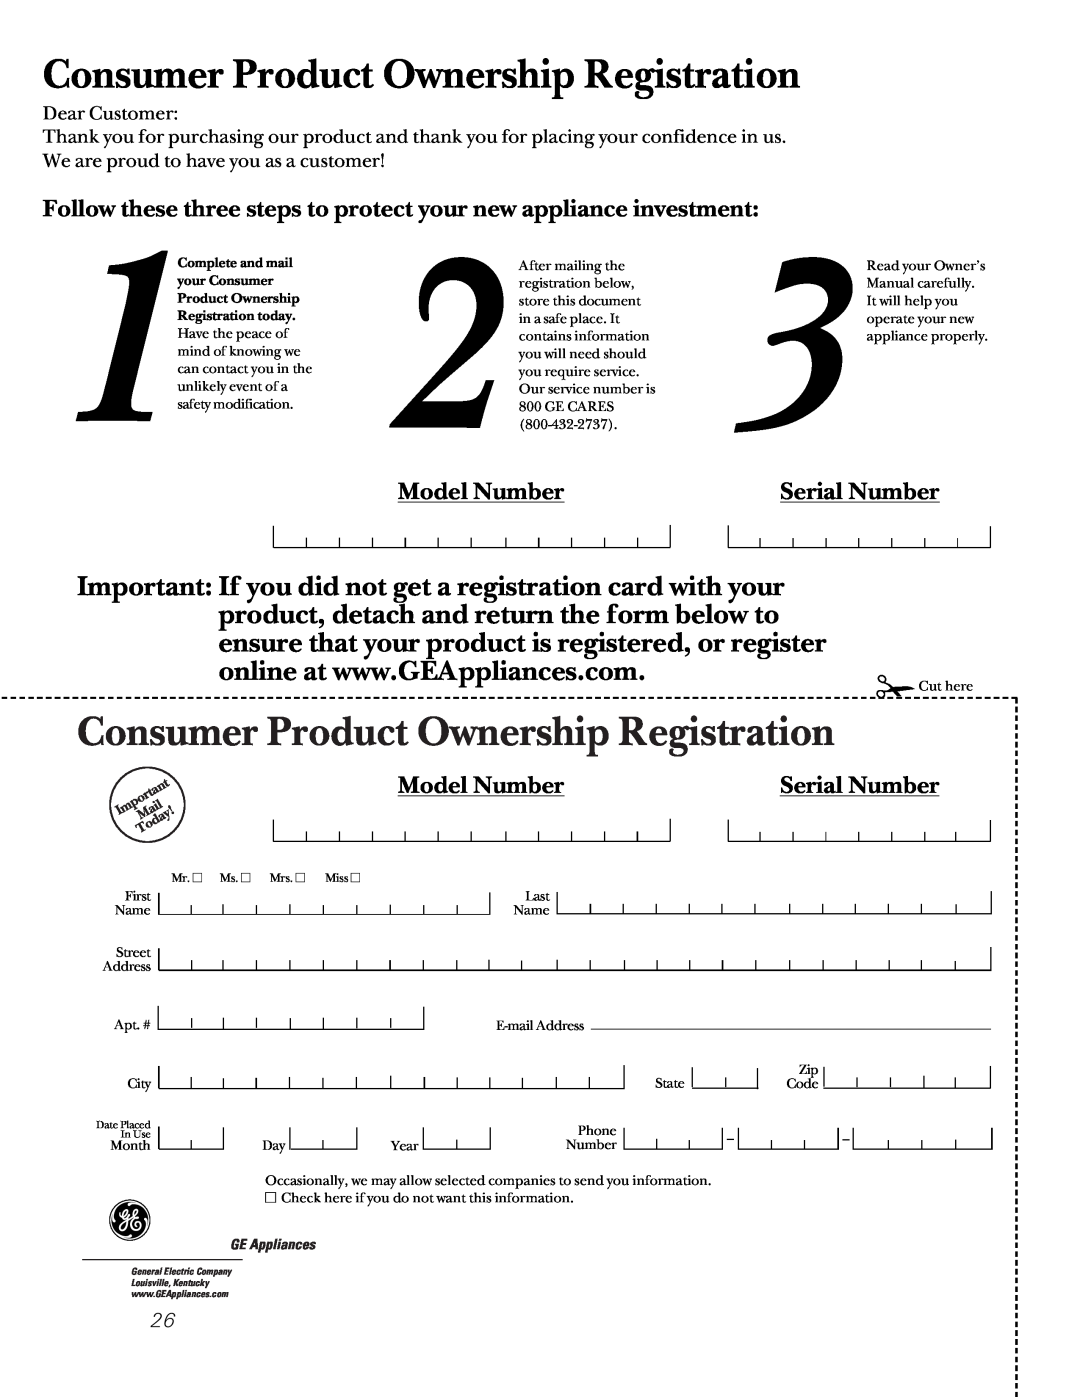 GE JTP45, JKP27, JRP24, JTP47, JKP45, JTP27 owner manual Consumer Product Ownership Registration, Model Number, Serial Number 